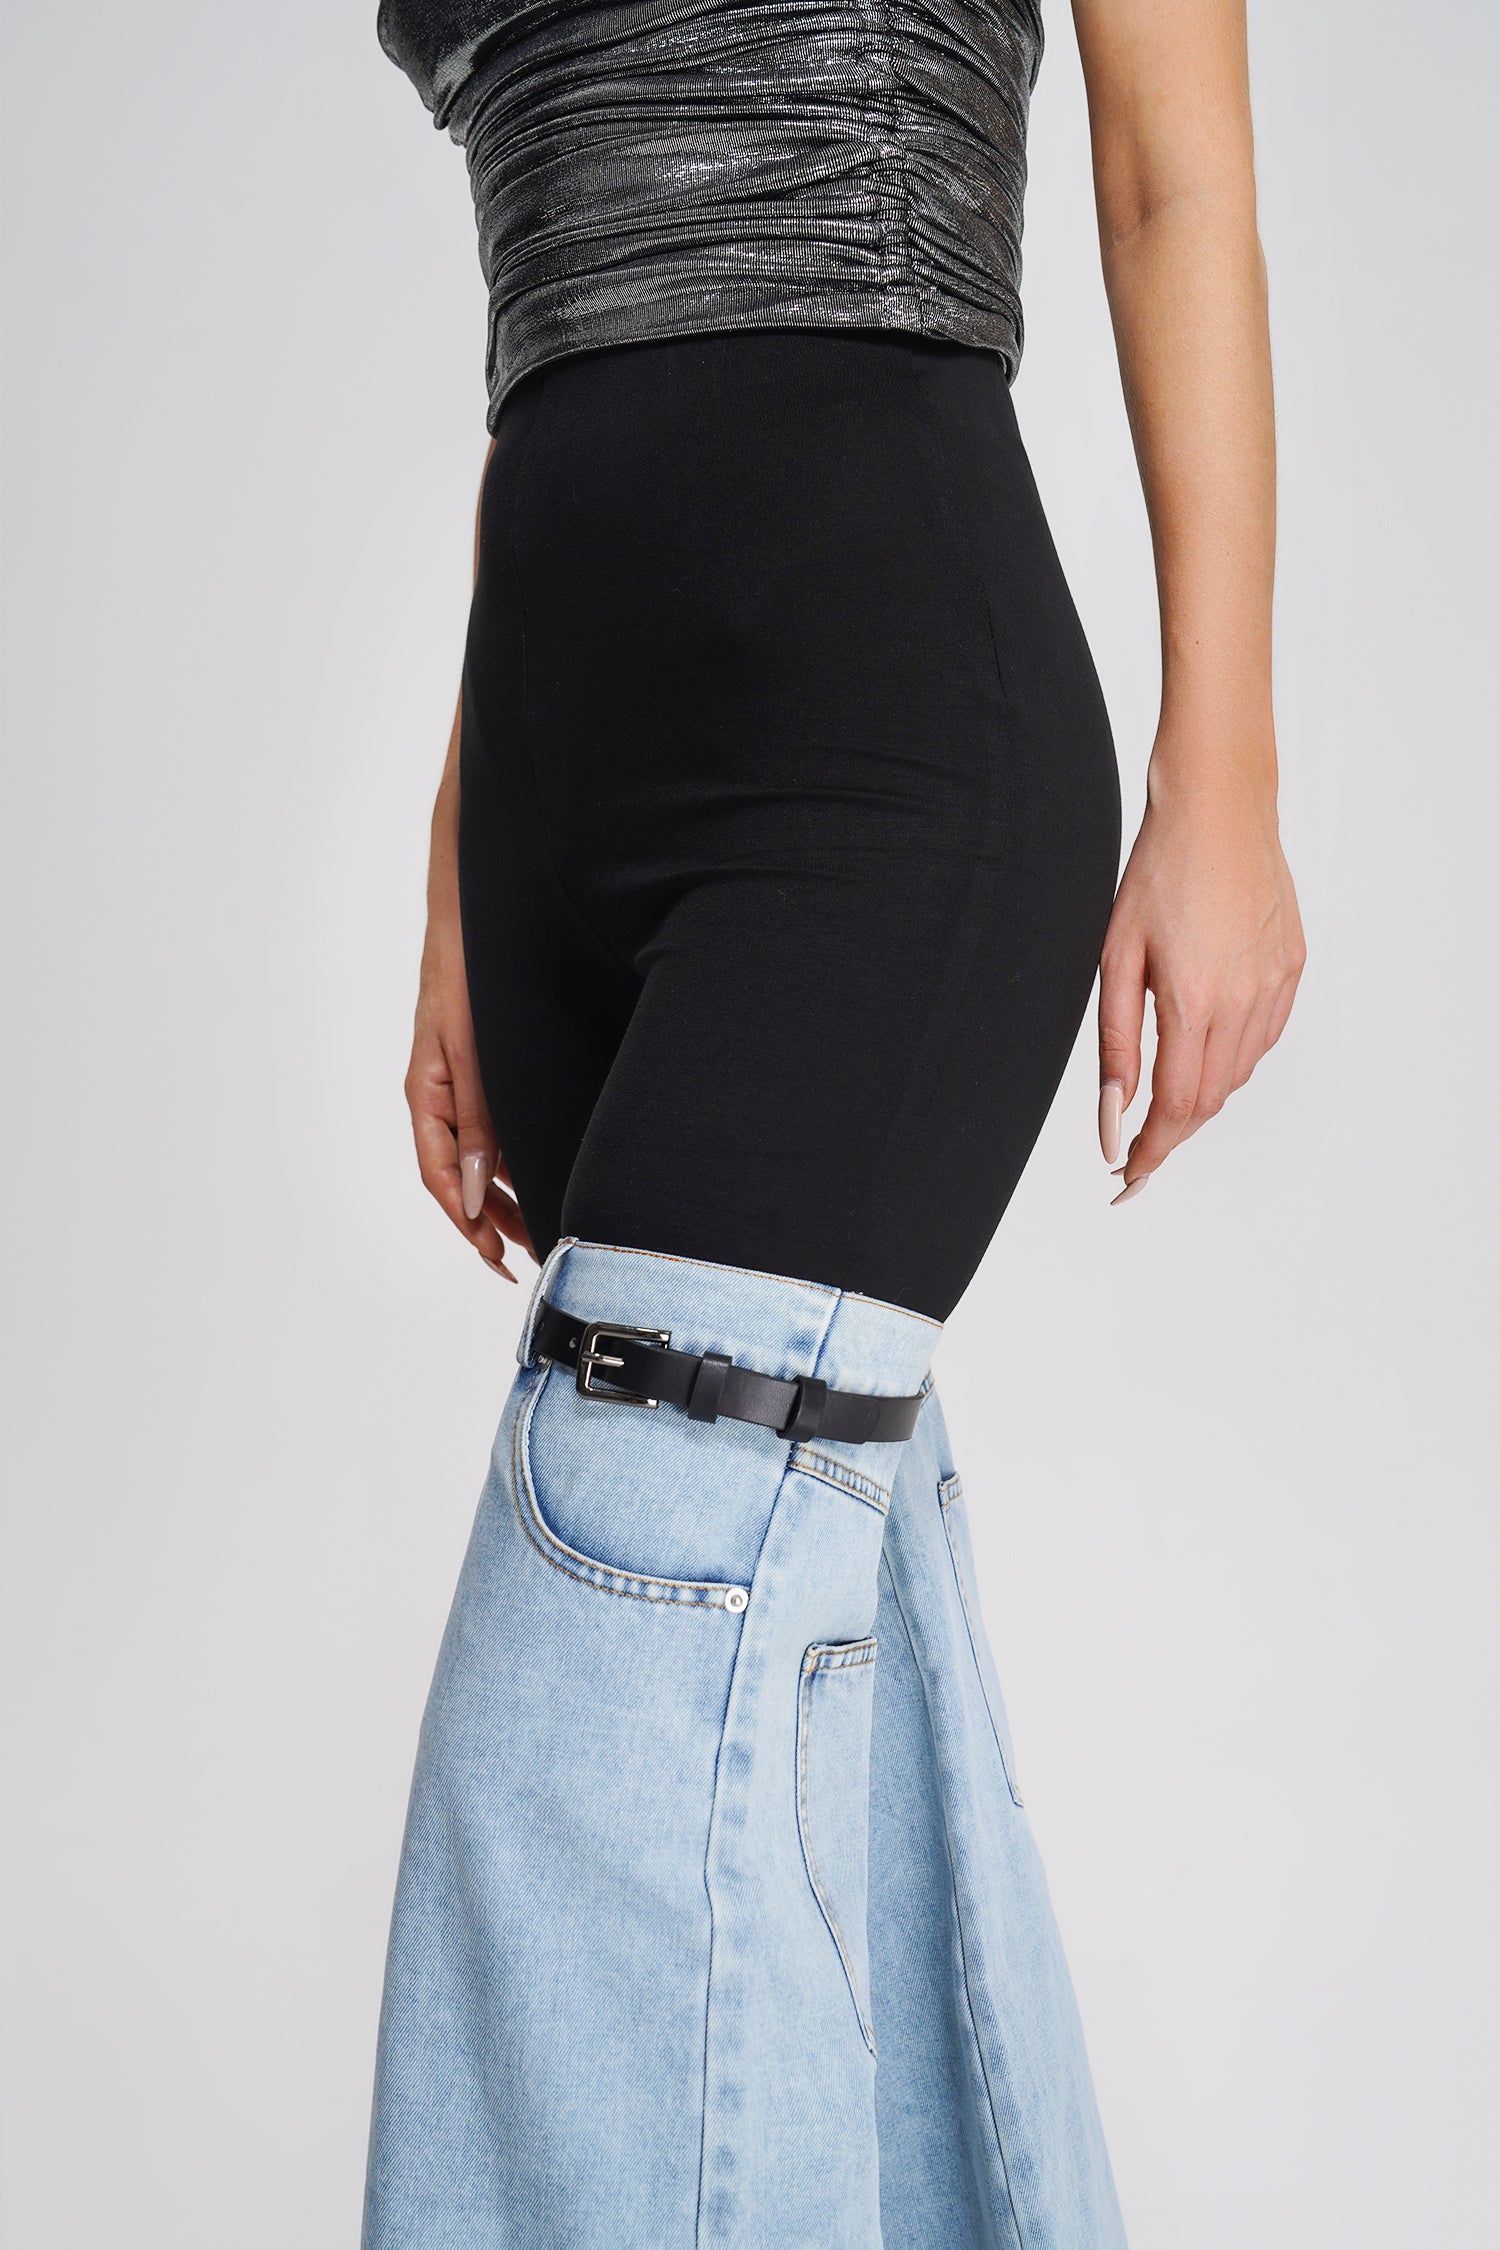 Oli & Hali patchwork denim jeans – Bella Vita Unique Boutique